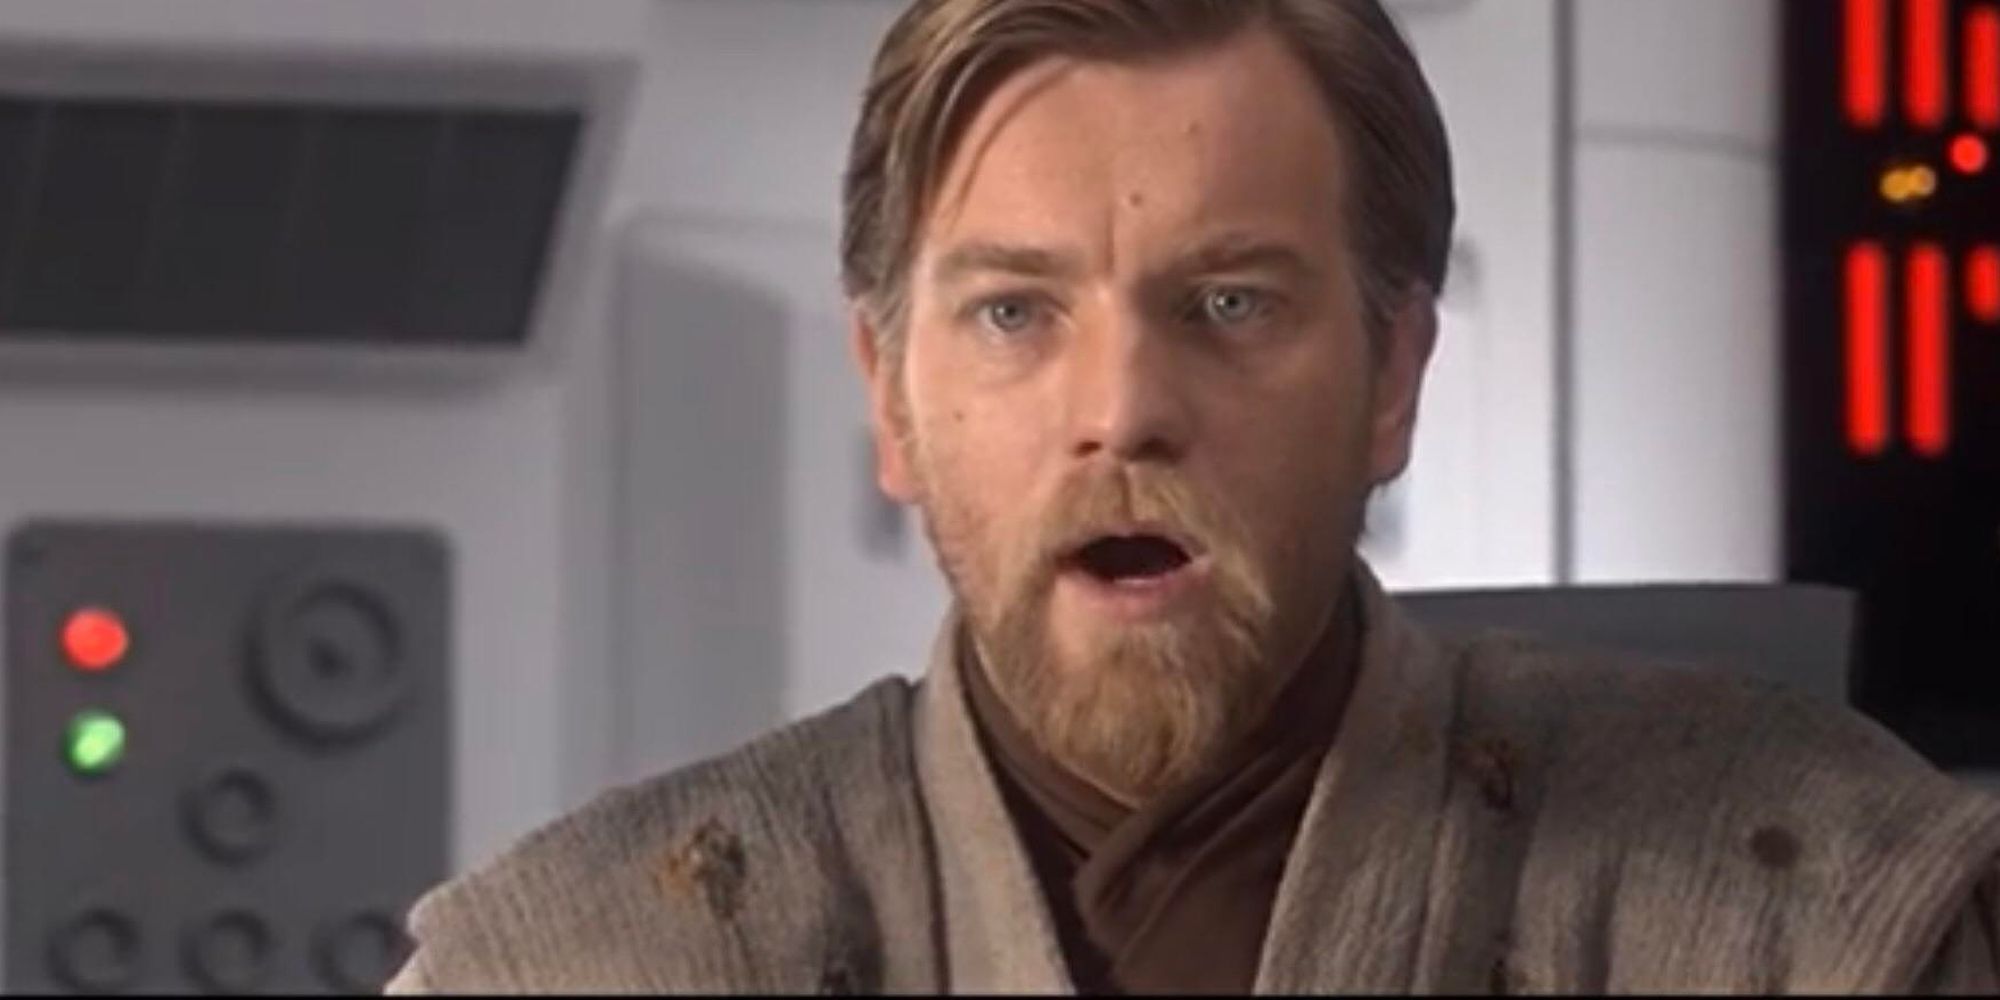 Obi-Wan Kenobi is shocked